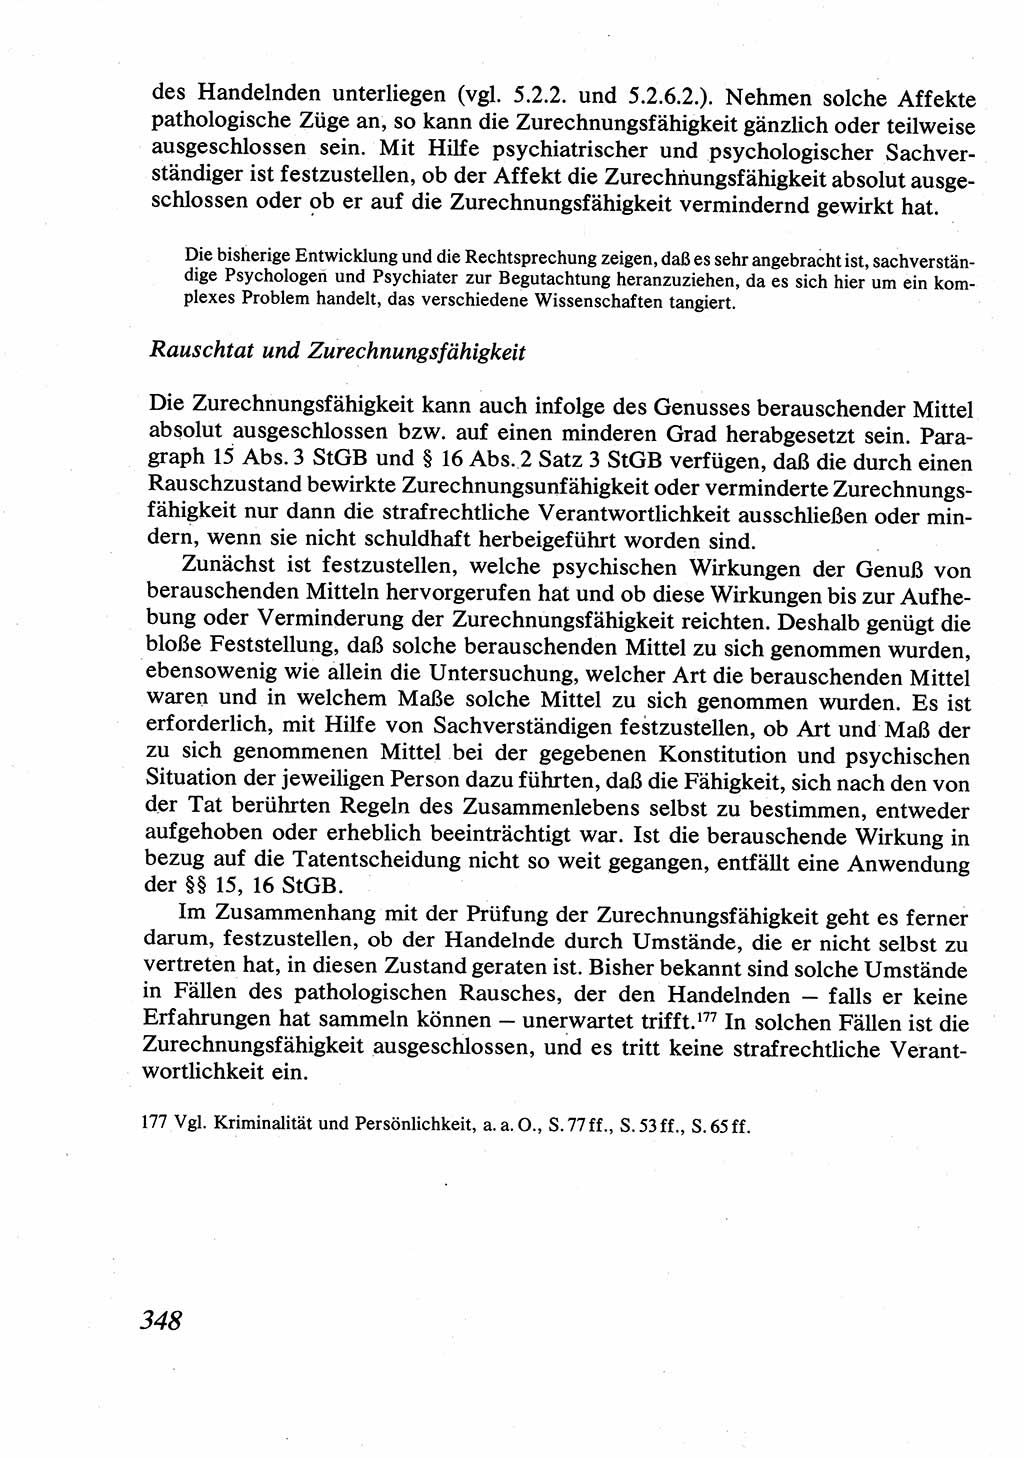 Strafrecht [Deutsche Demokratische Republik (DDR)], Allgemeiner Teil, Lehrbuch 1976, Seite 348 (Strafr. DDR AT Lb. 1976, S. 348)